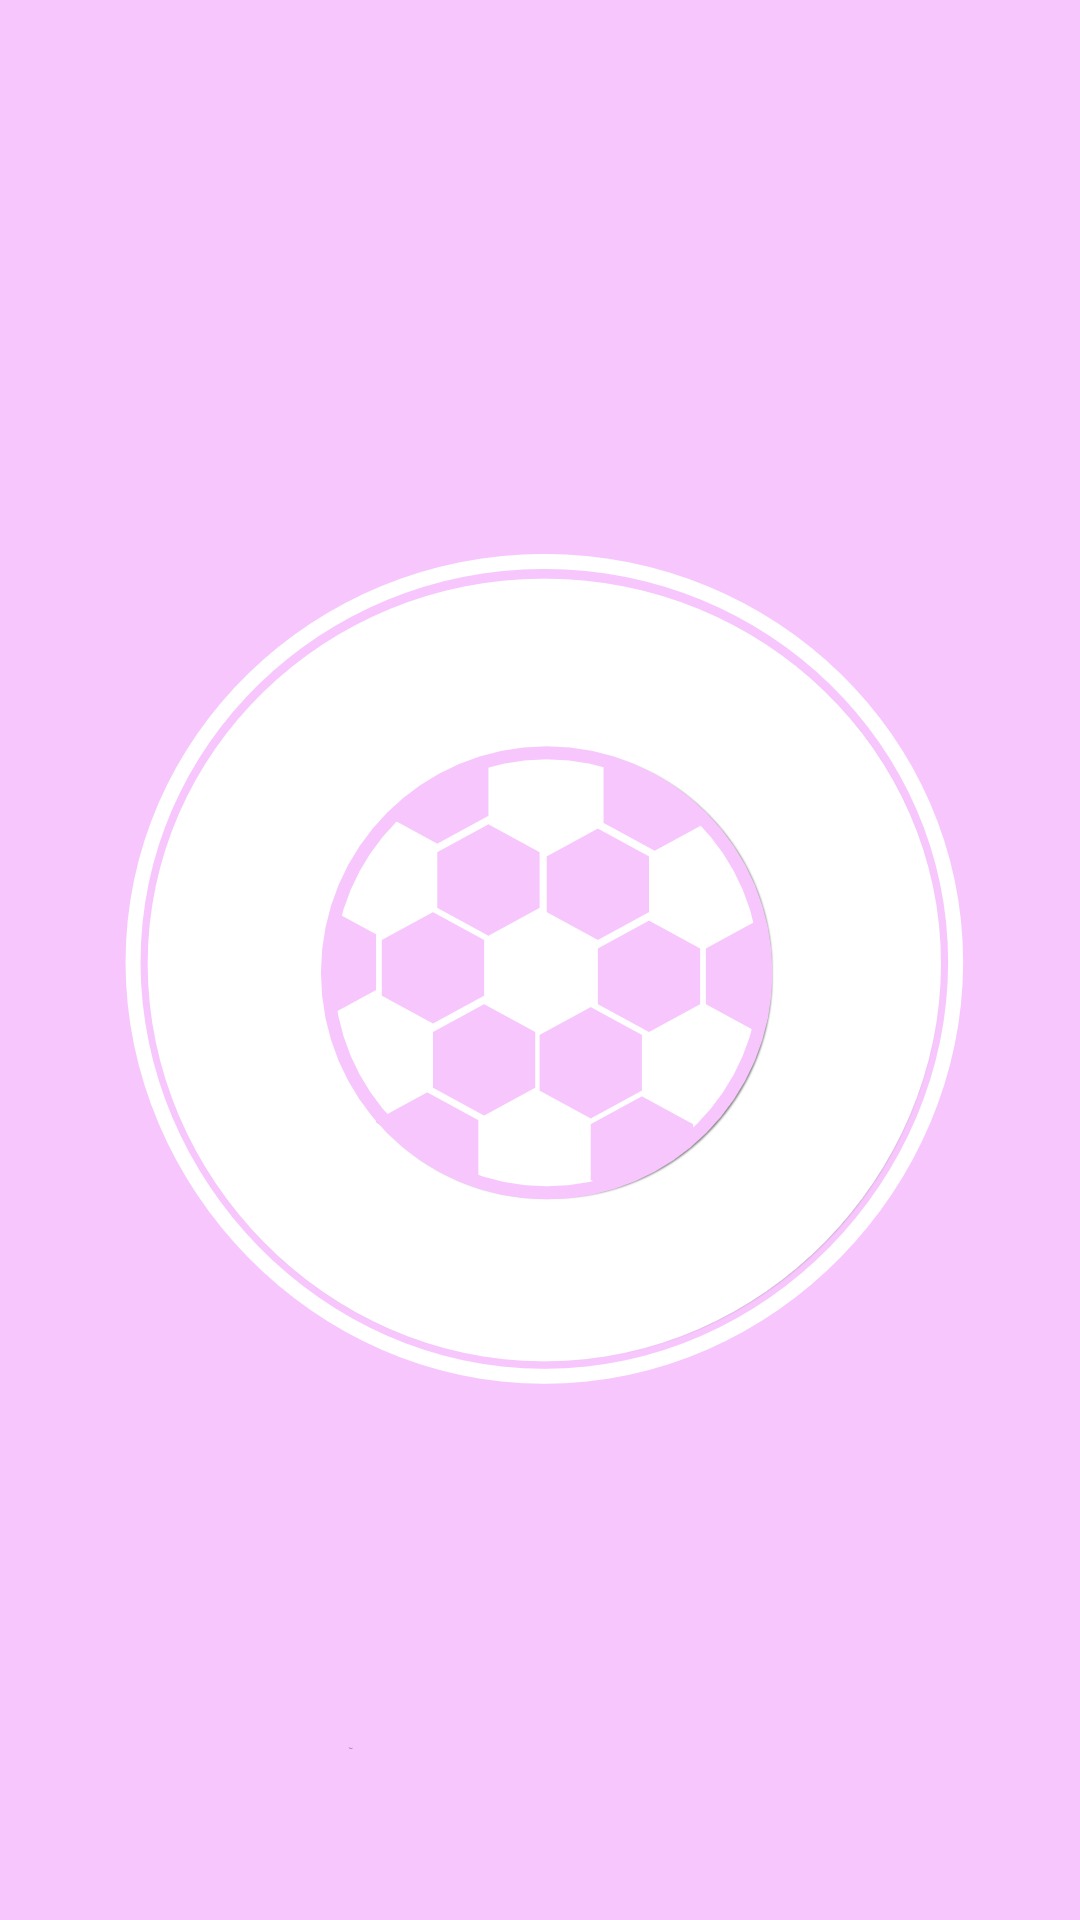 Instagram-cover-ball-pink-lotnotes.com.jpg